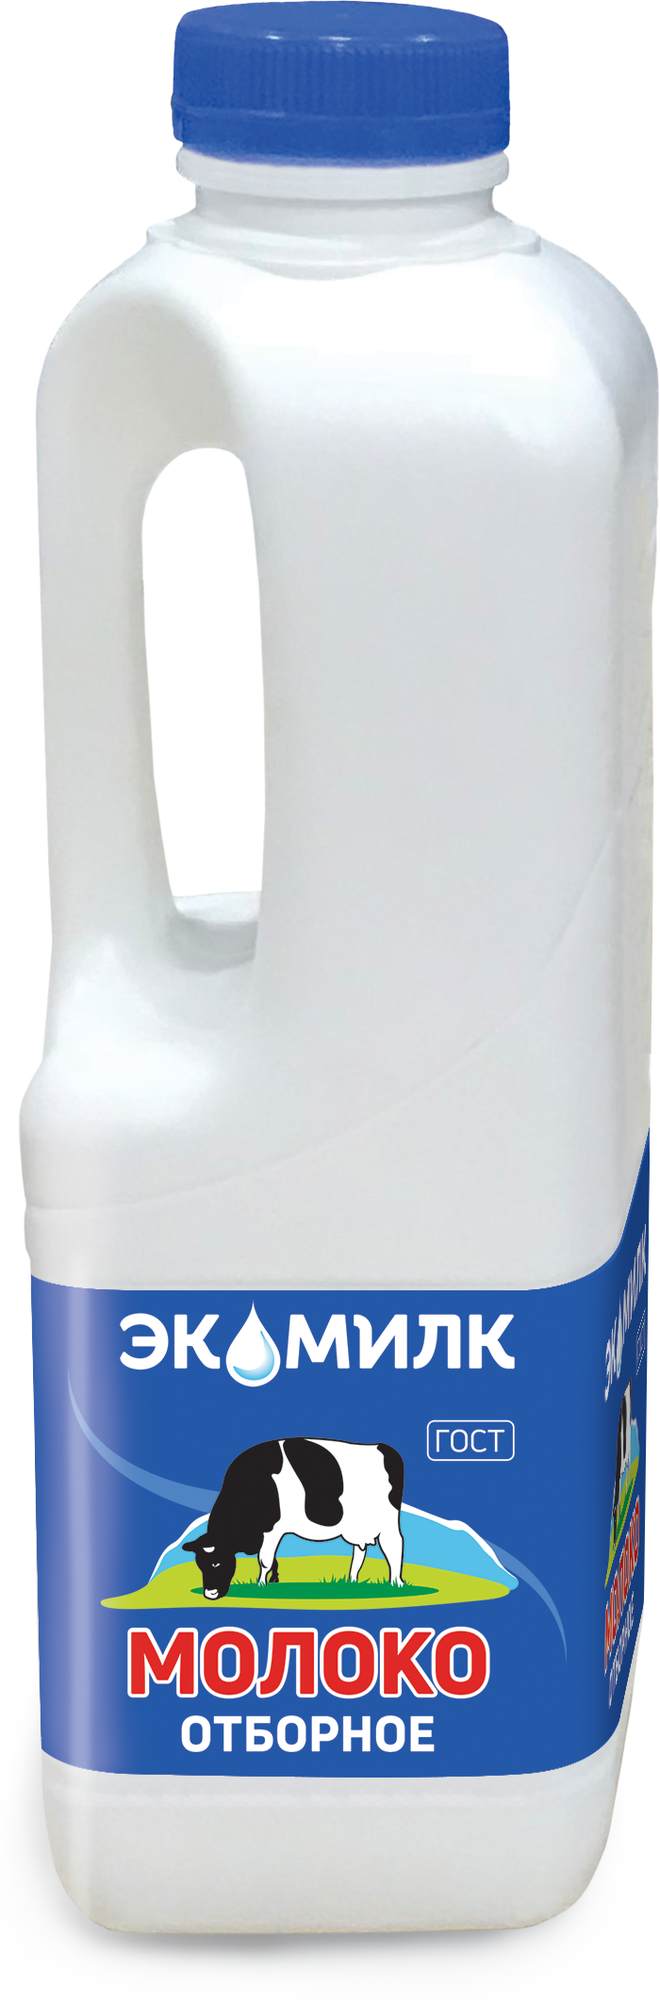 Молоко Экомилк отборное 3,4-4,5%